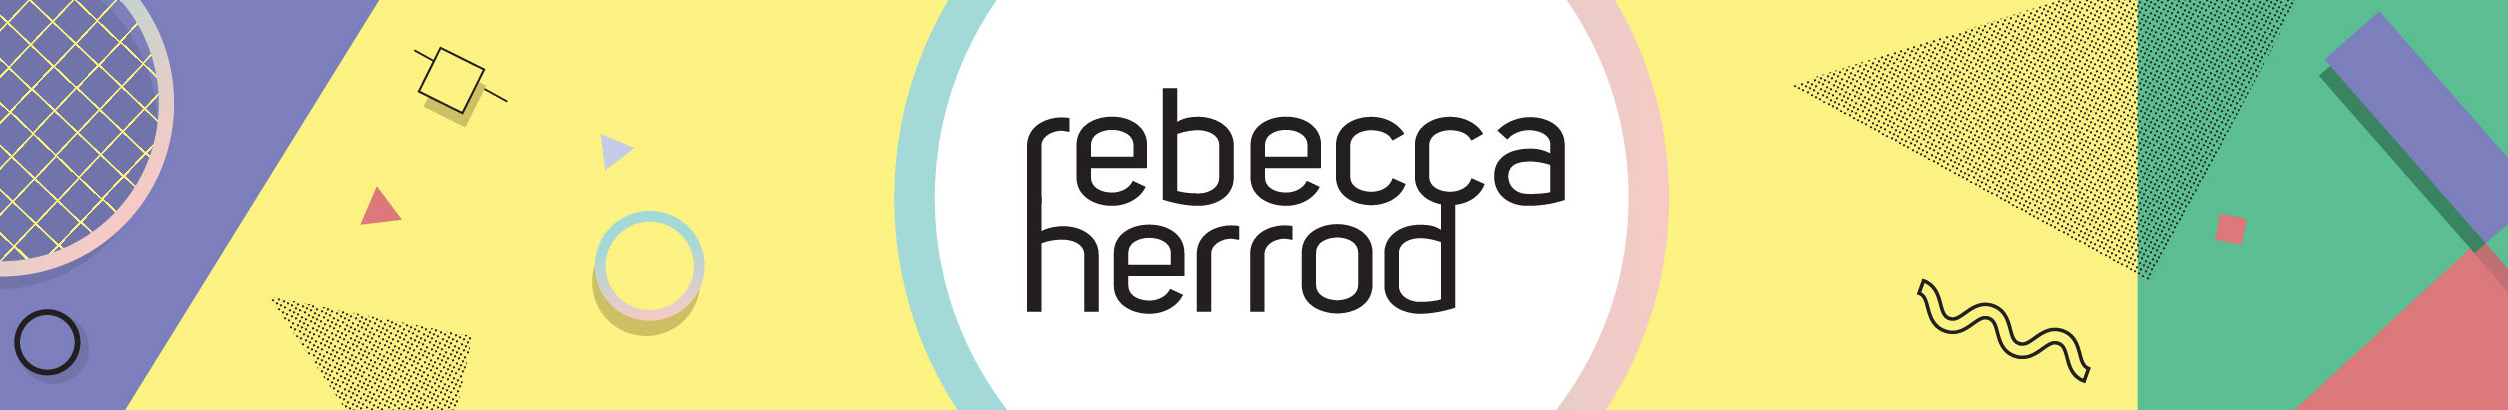 Rebecca Herrod's profile banner